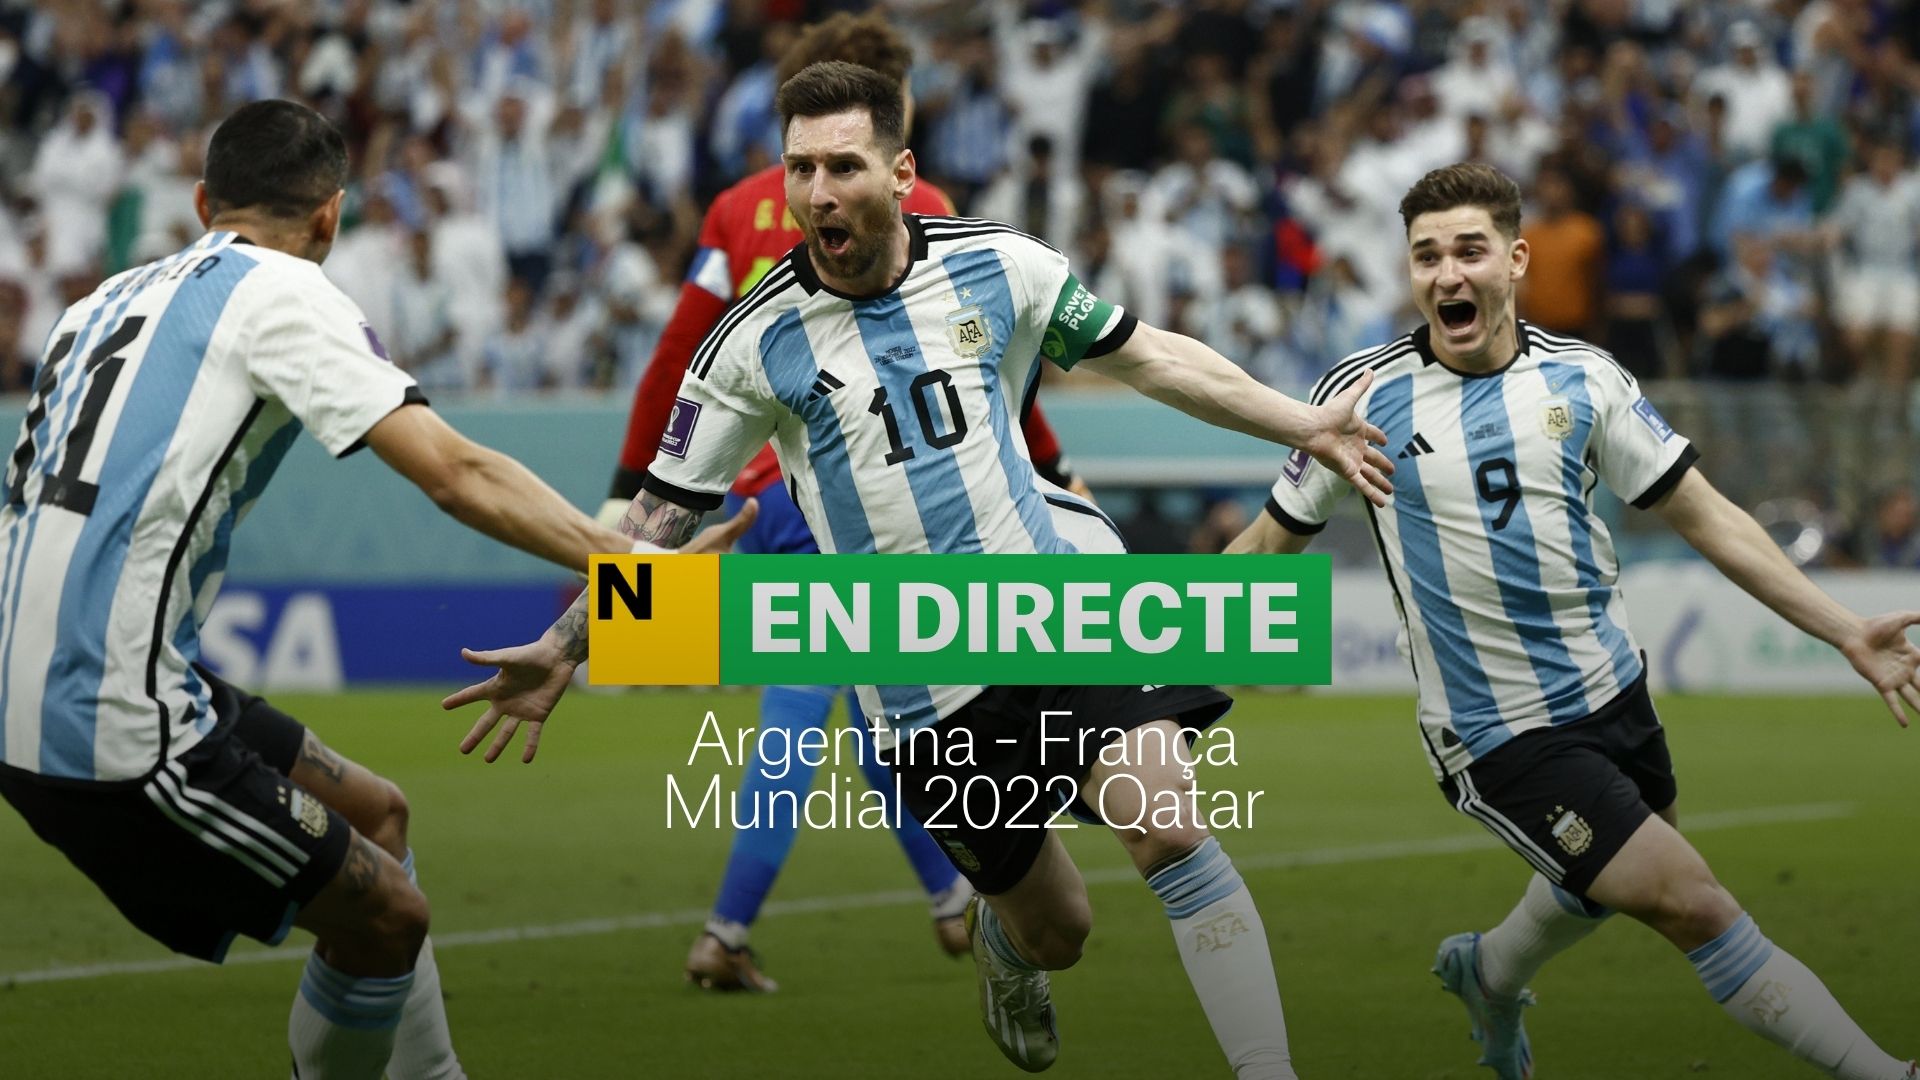 Argentina-Francia del Mundial 2022 | DIRECTO: últimos minutos de la prórroga